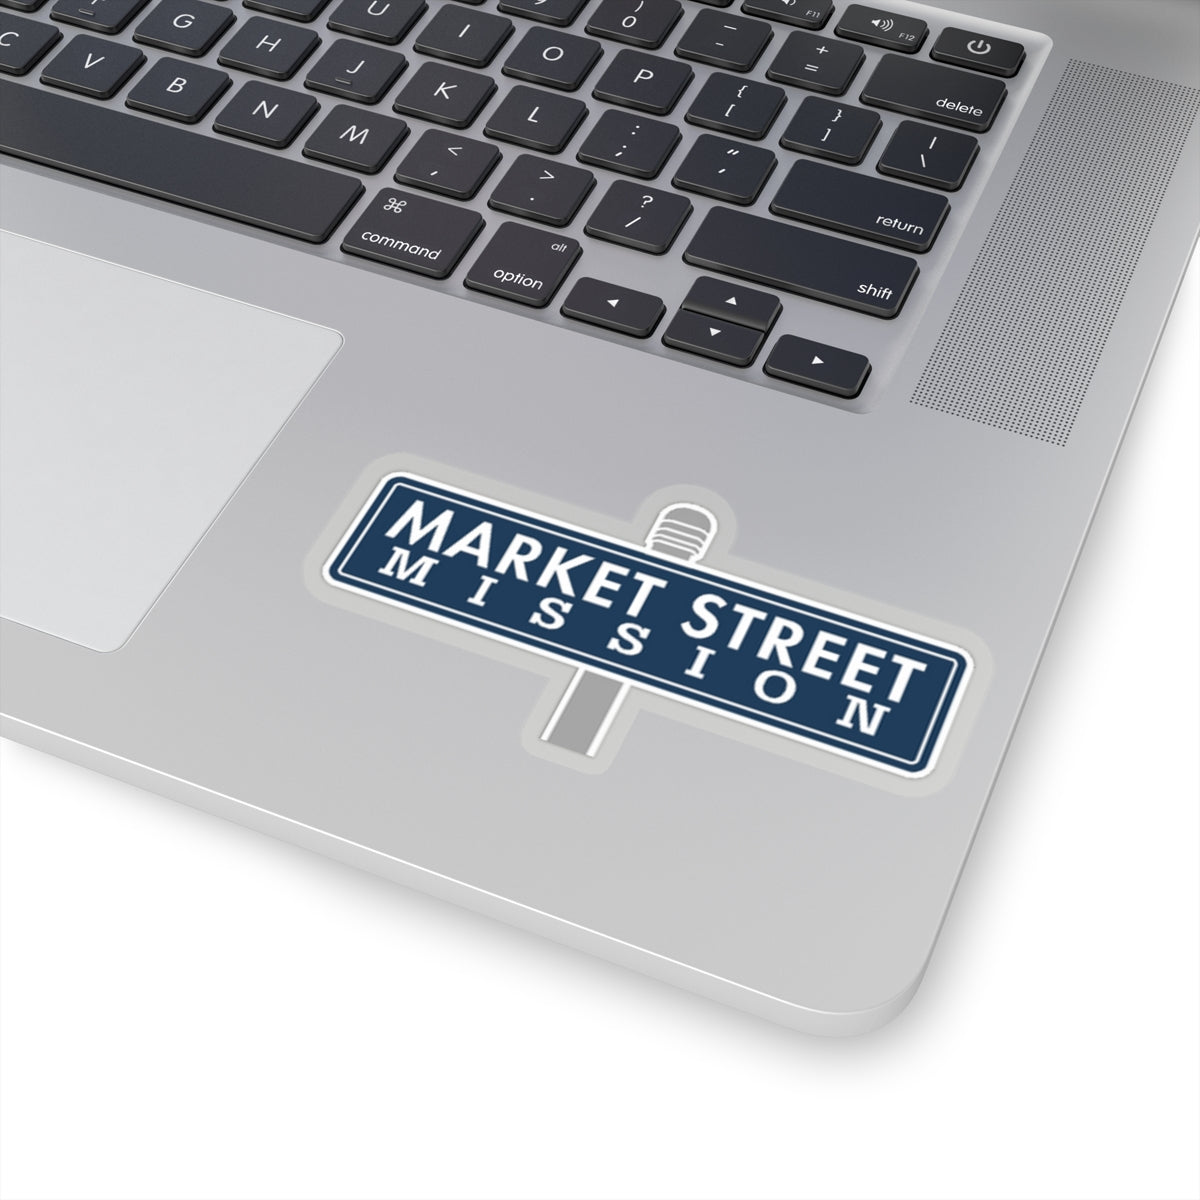 MSM - Street Sign Sticker